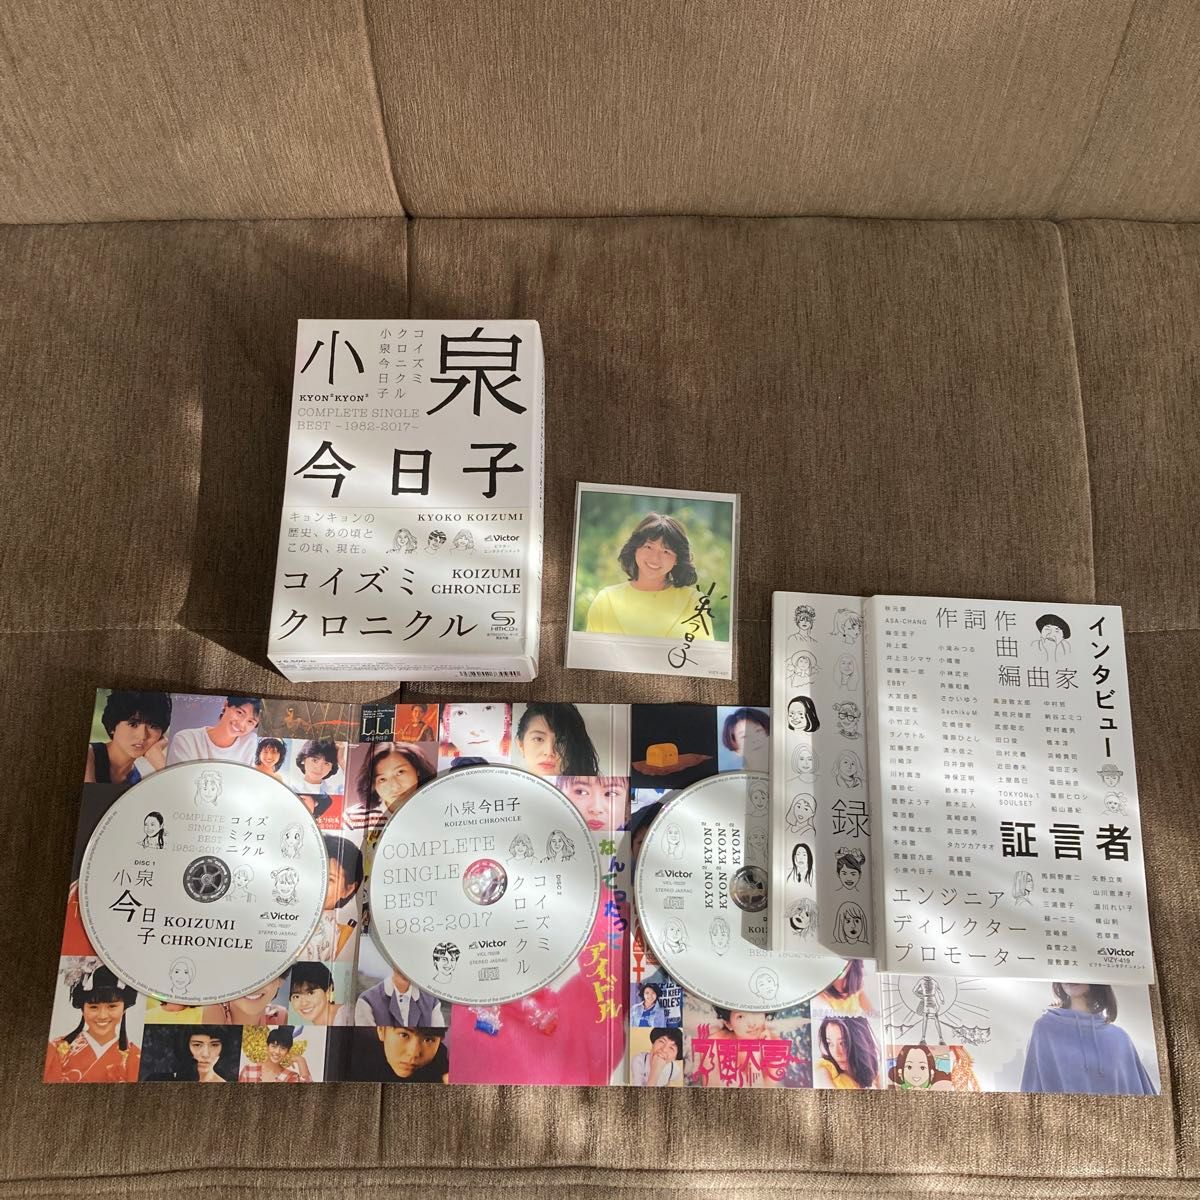 小泉今日子 コイズミクロニクル~コンプリートシングルベスト 1982-2017~ (初回限定プレミアムBOX)